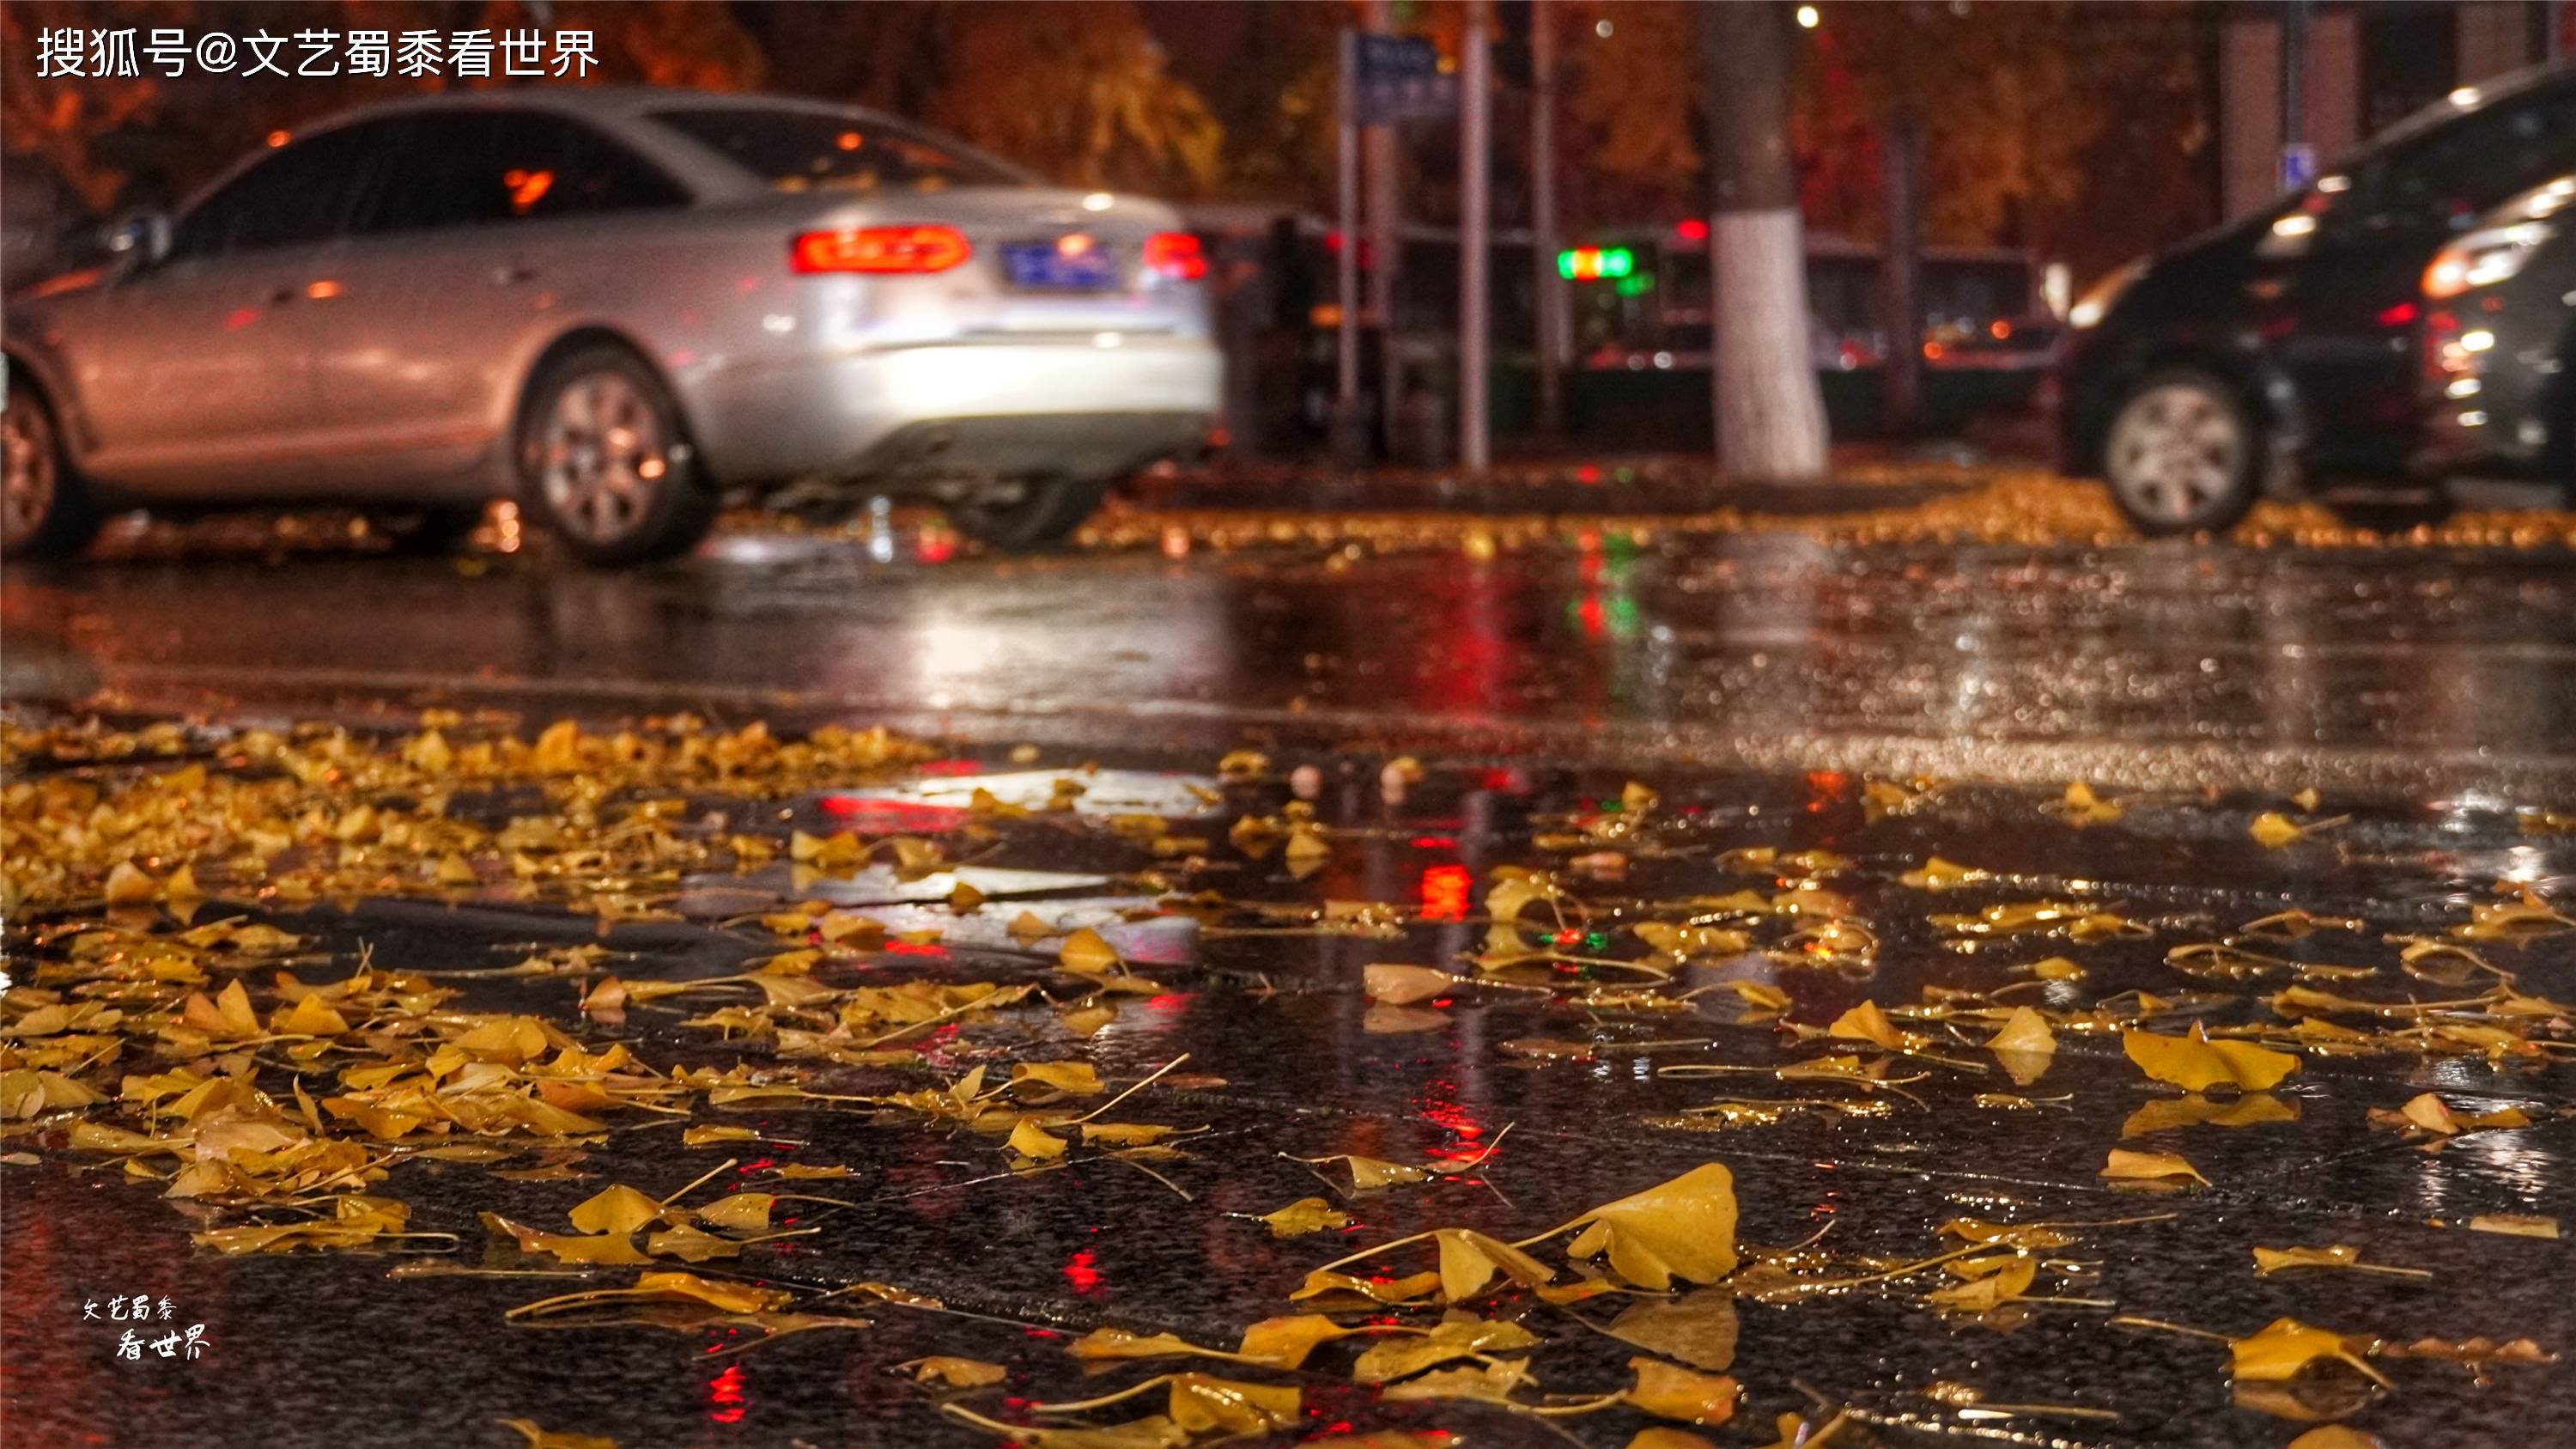 原创我想带你在丹东的街头走一走在深秋的雨夜它美得令人感动